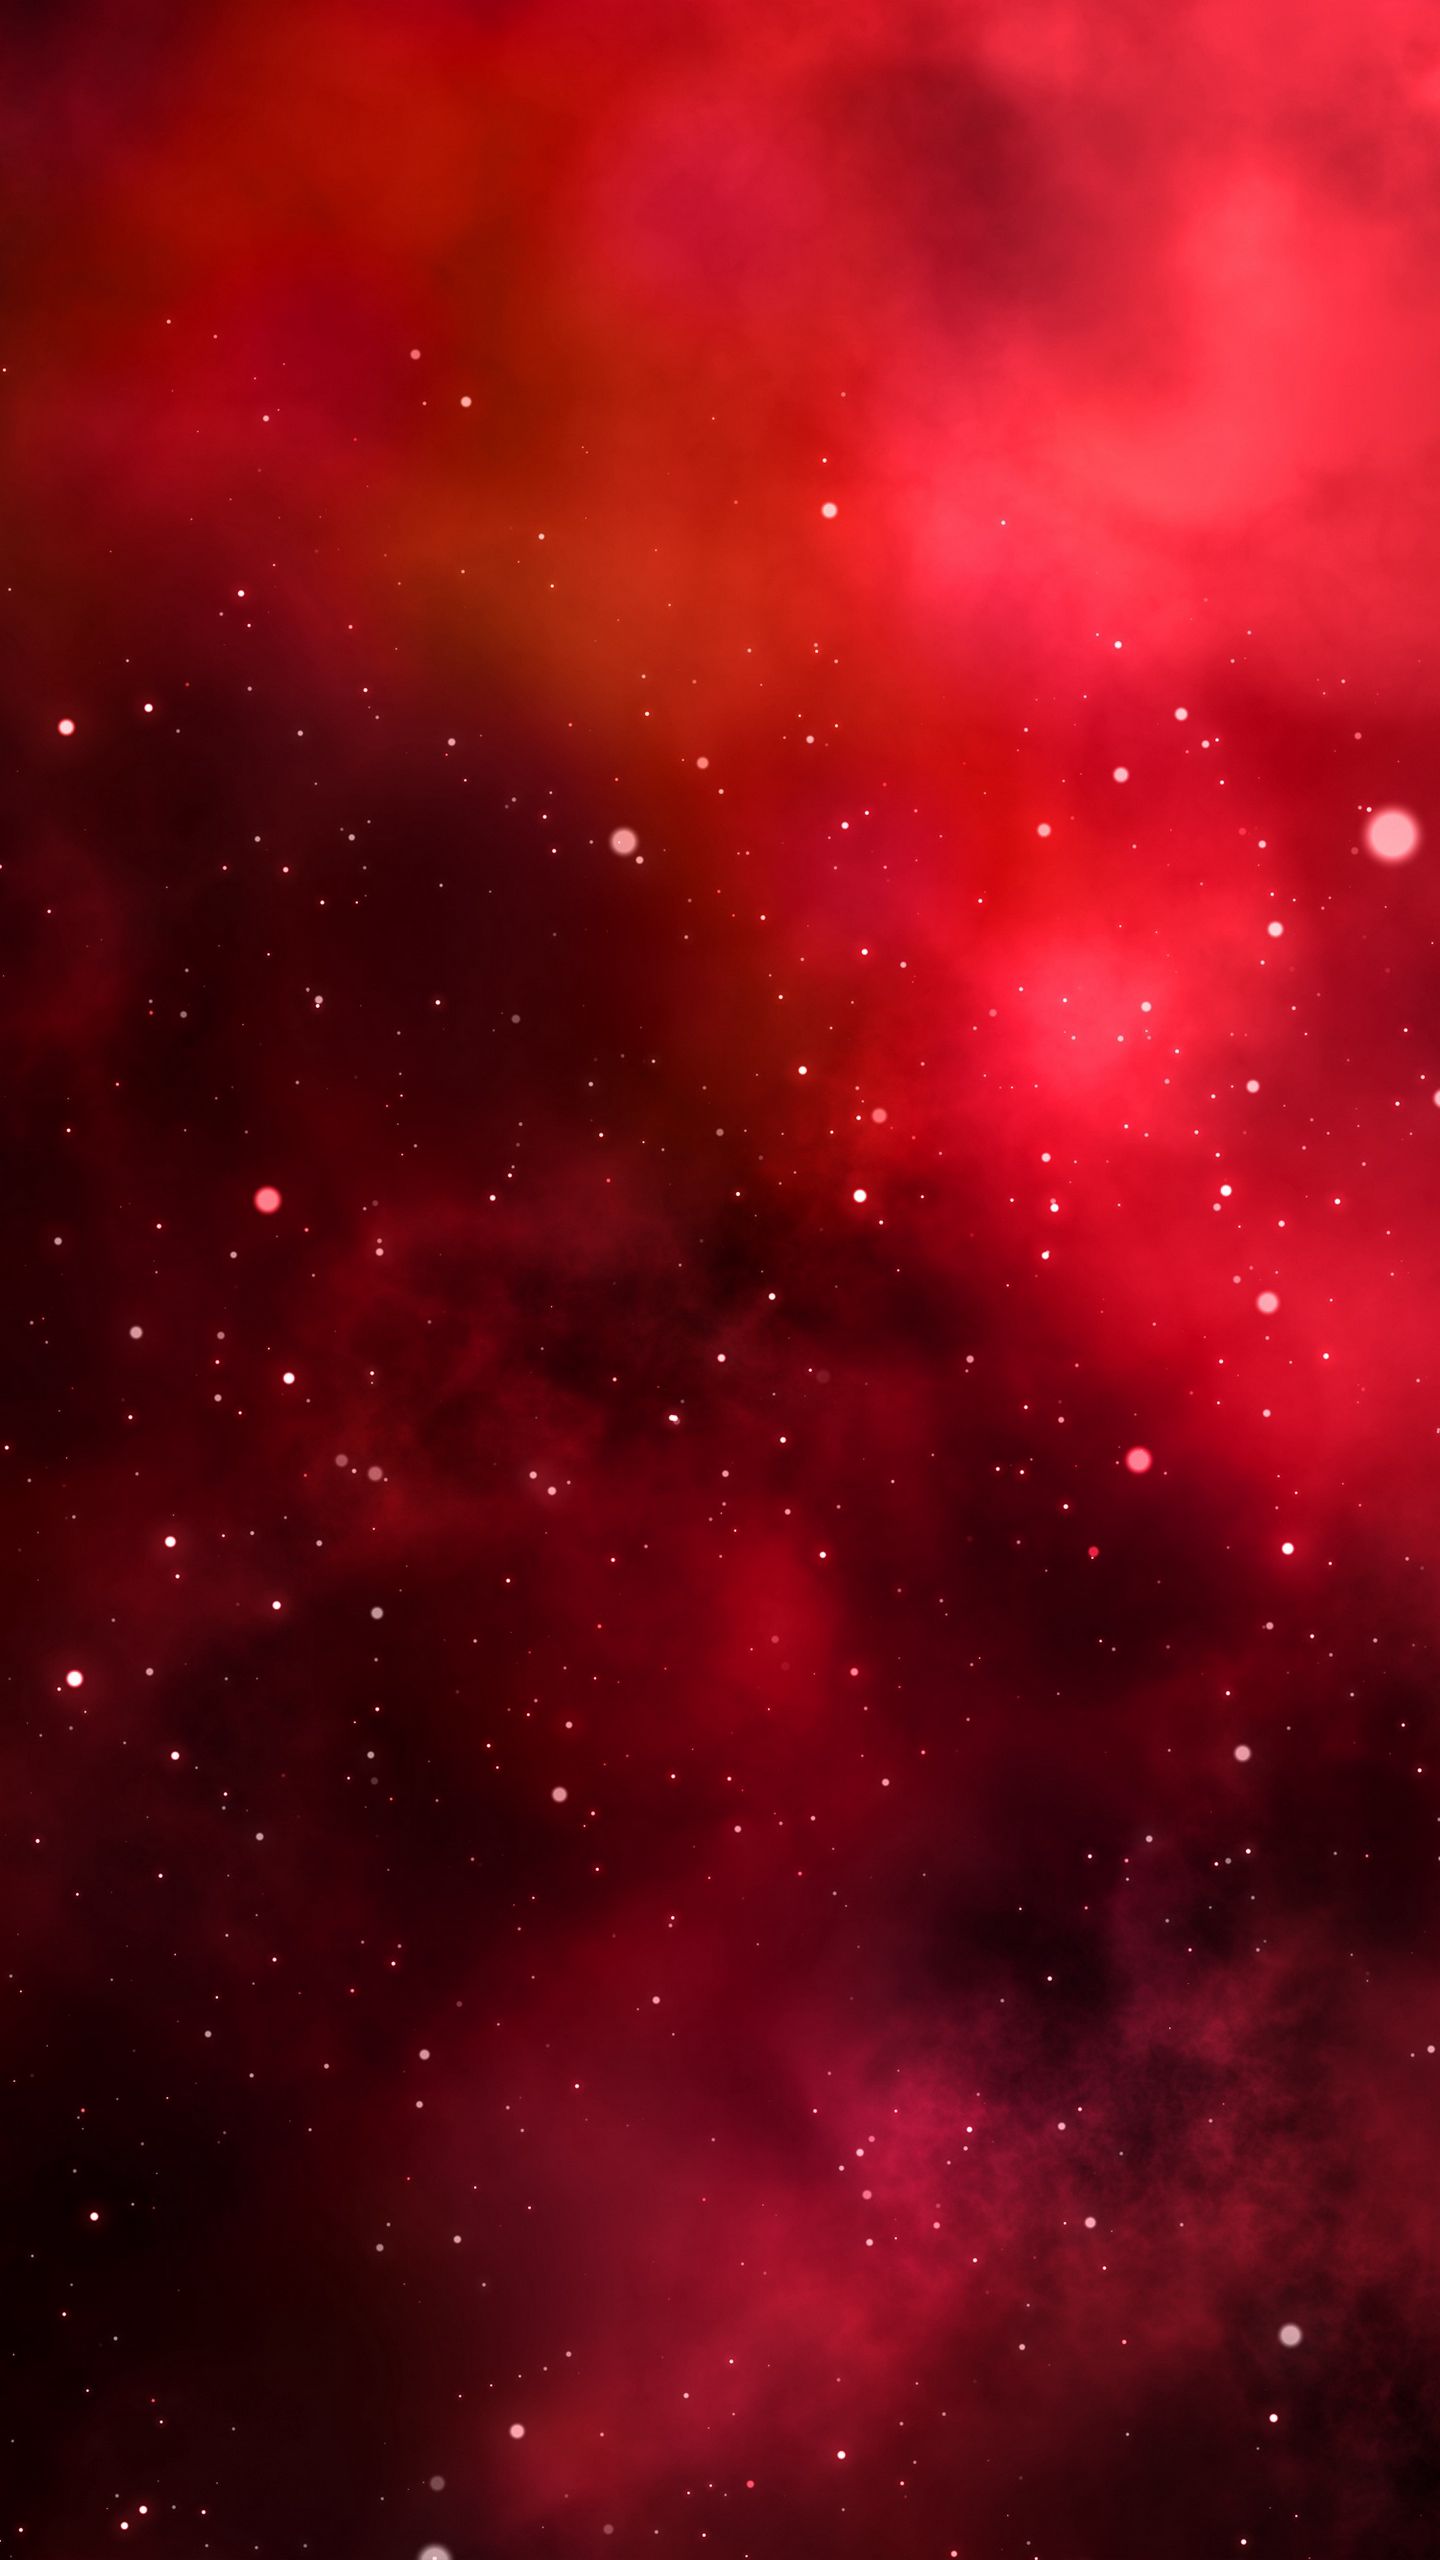 Hình nền thiên hà đỏ, ánh sáng, vũ trụ sẽ làm cho màn hình của bạn trở nên mê hoặc và đặc biệt hơn bao giờ hết. Từ những hình ảnh đẹp, chúng tôi đã tạo ra một bộ sưu tập độc đáo nhất để khiến bạn không muốn rời mắt khỏi màn hình!